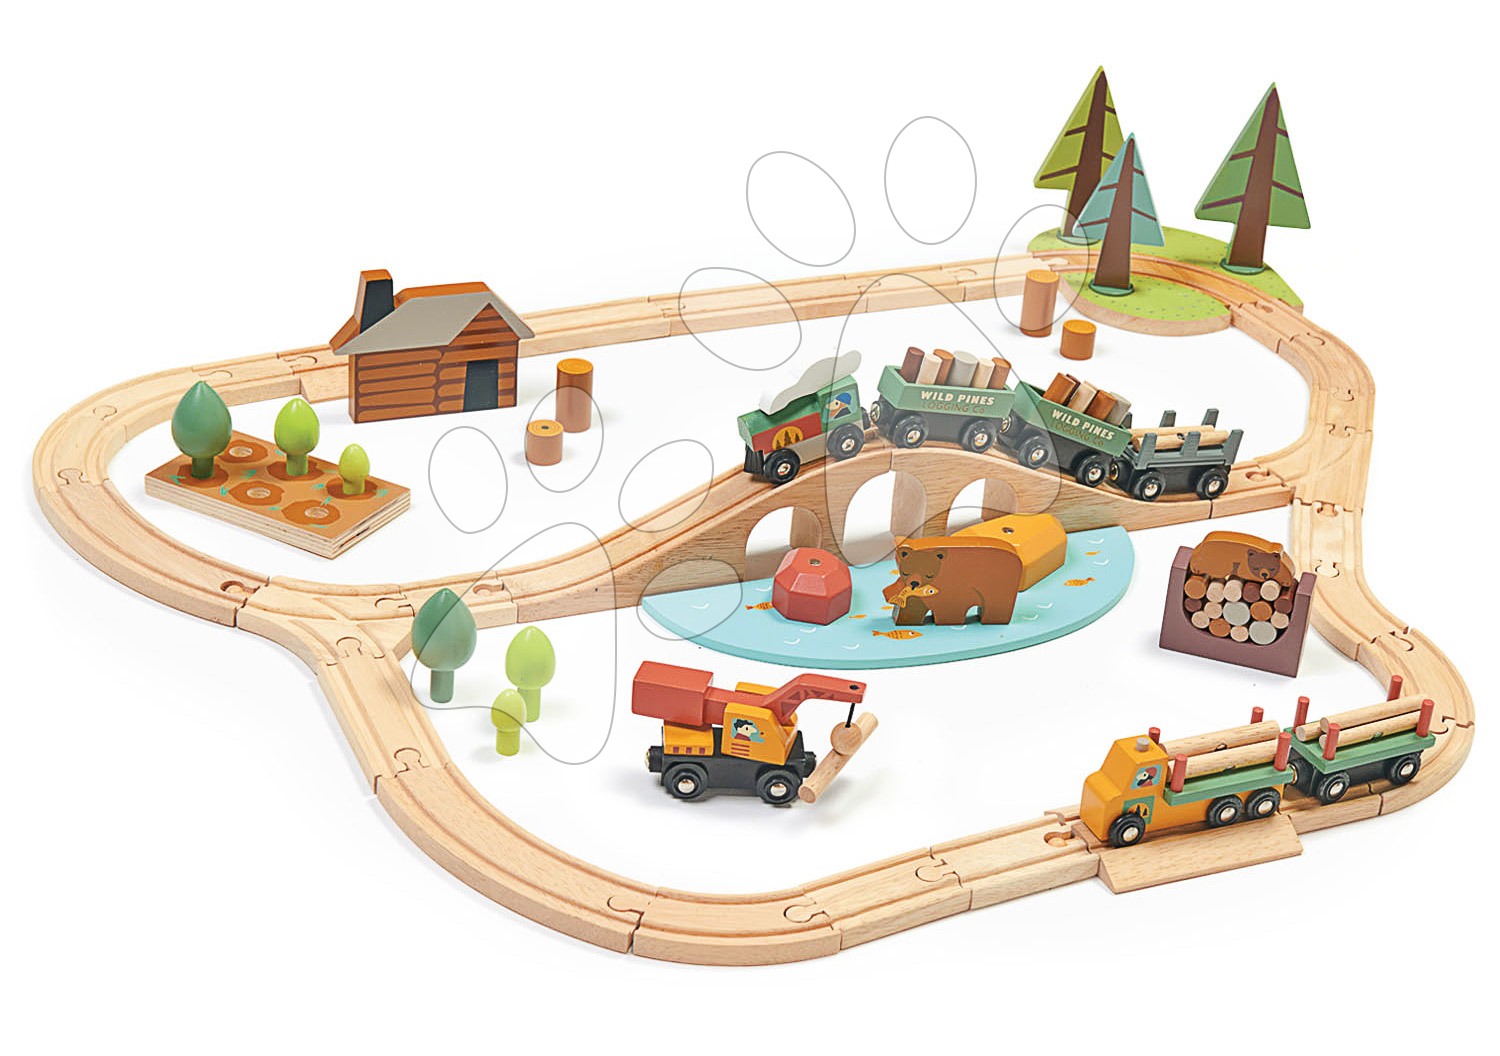 Fa vonatpálya fenyves erdőben Wild Pines Train set Tender Leaf Toys vonattal és munkagépekkel állatkákkal és természettel